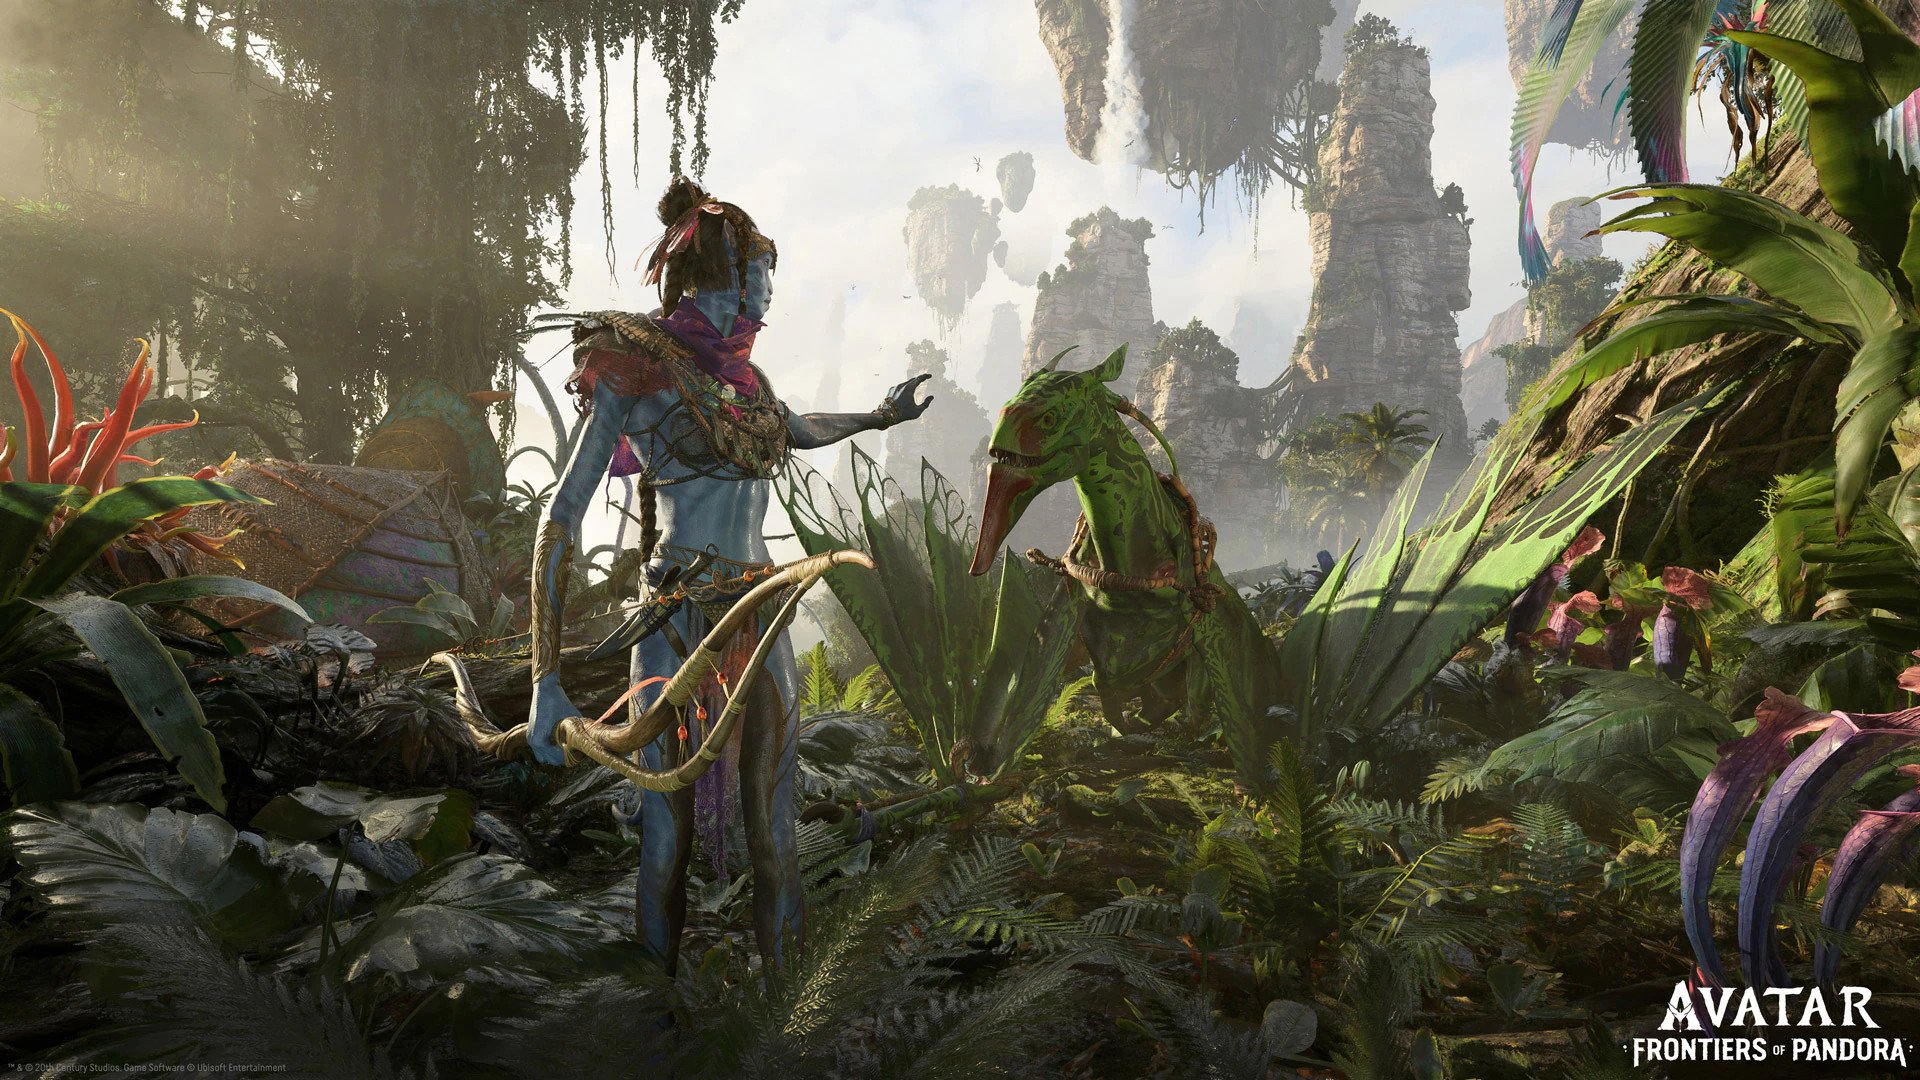 Avatar Frontiers of Pandora: Với game mới Avatar Frontiers of Pandora, hãy chuẩn bị cho một cuộc phiêu lưu đầy hấp dẫn vào thế giới Pandora với những lãnh địa hoang sơ và các sinh vật độc đáo. Với đồ họa tuyệt đẹp và gameplay đầy thử thách, trò chơi sẽ đưa bạn đến những giới hạn mới.